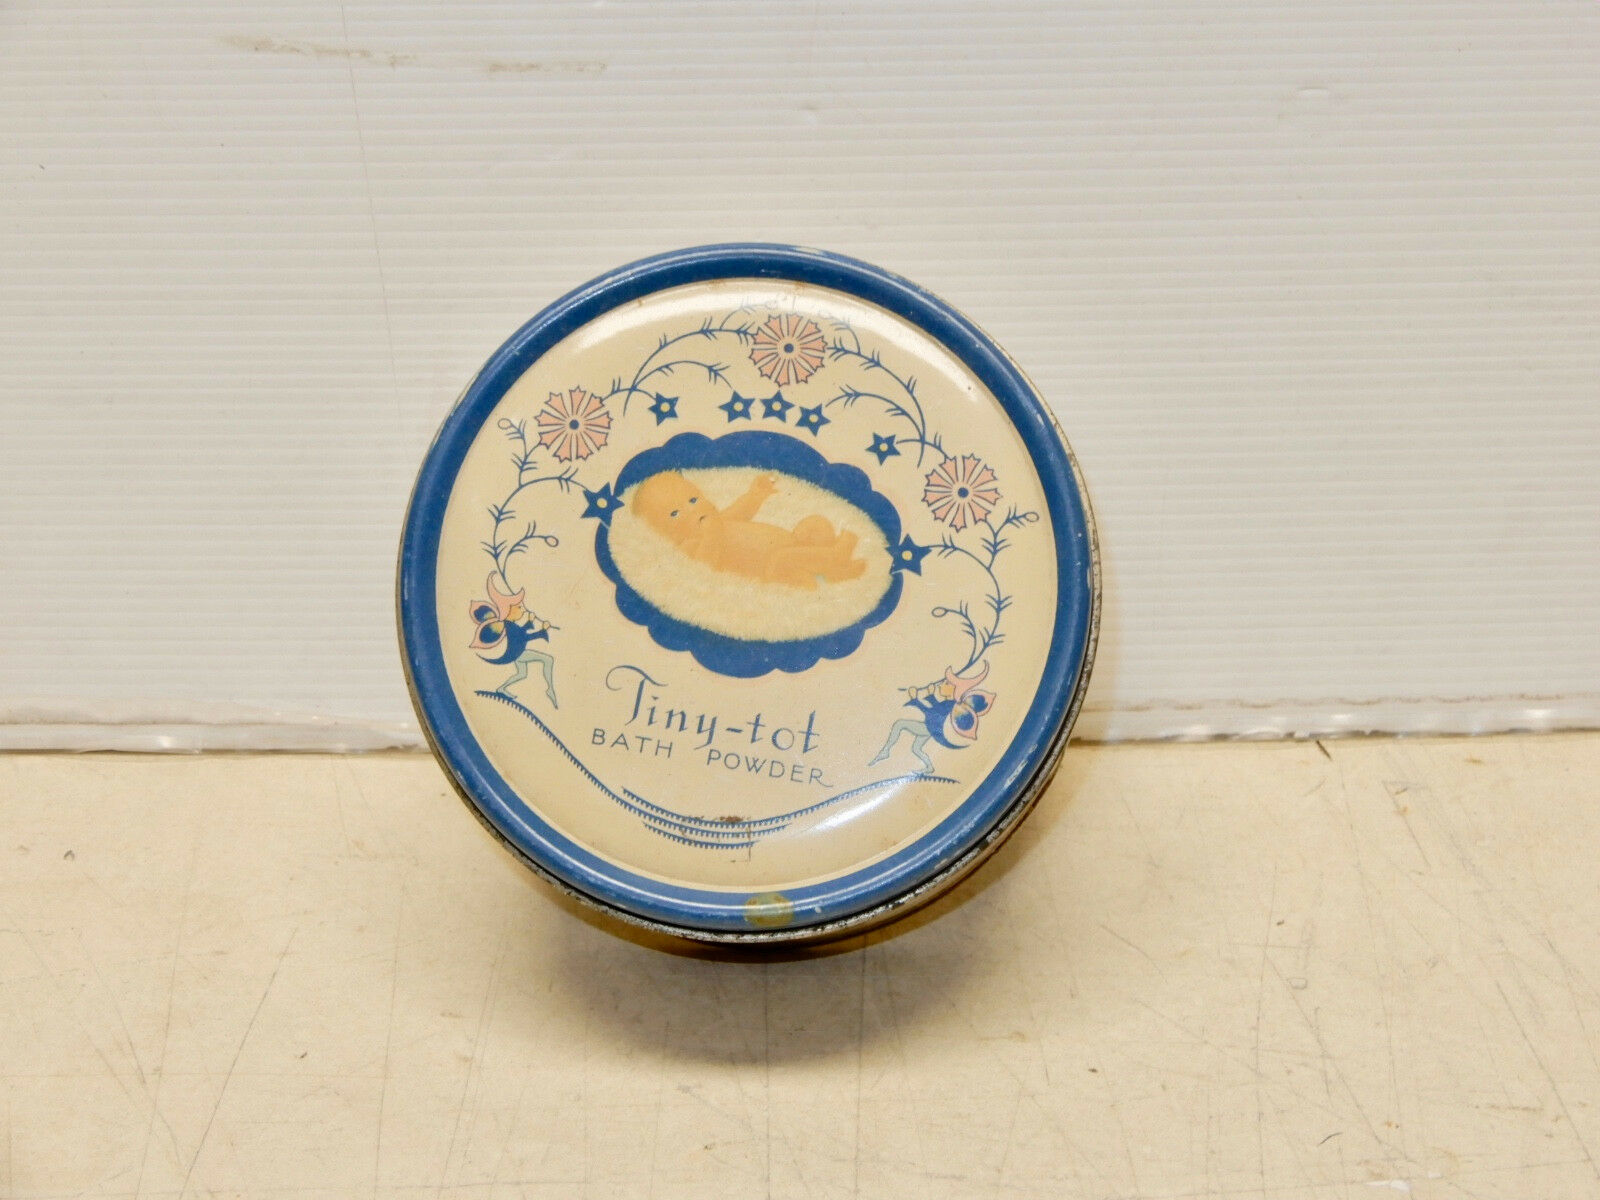 Vintage Tiny Tot Bath Powder Tin